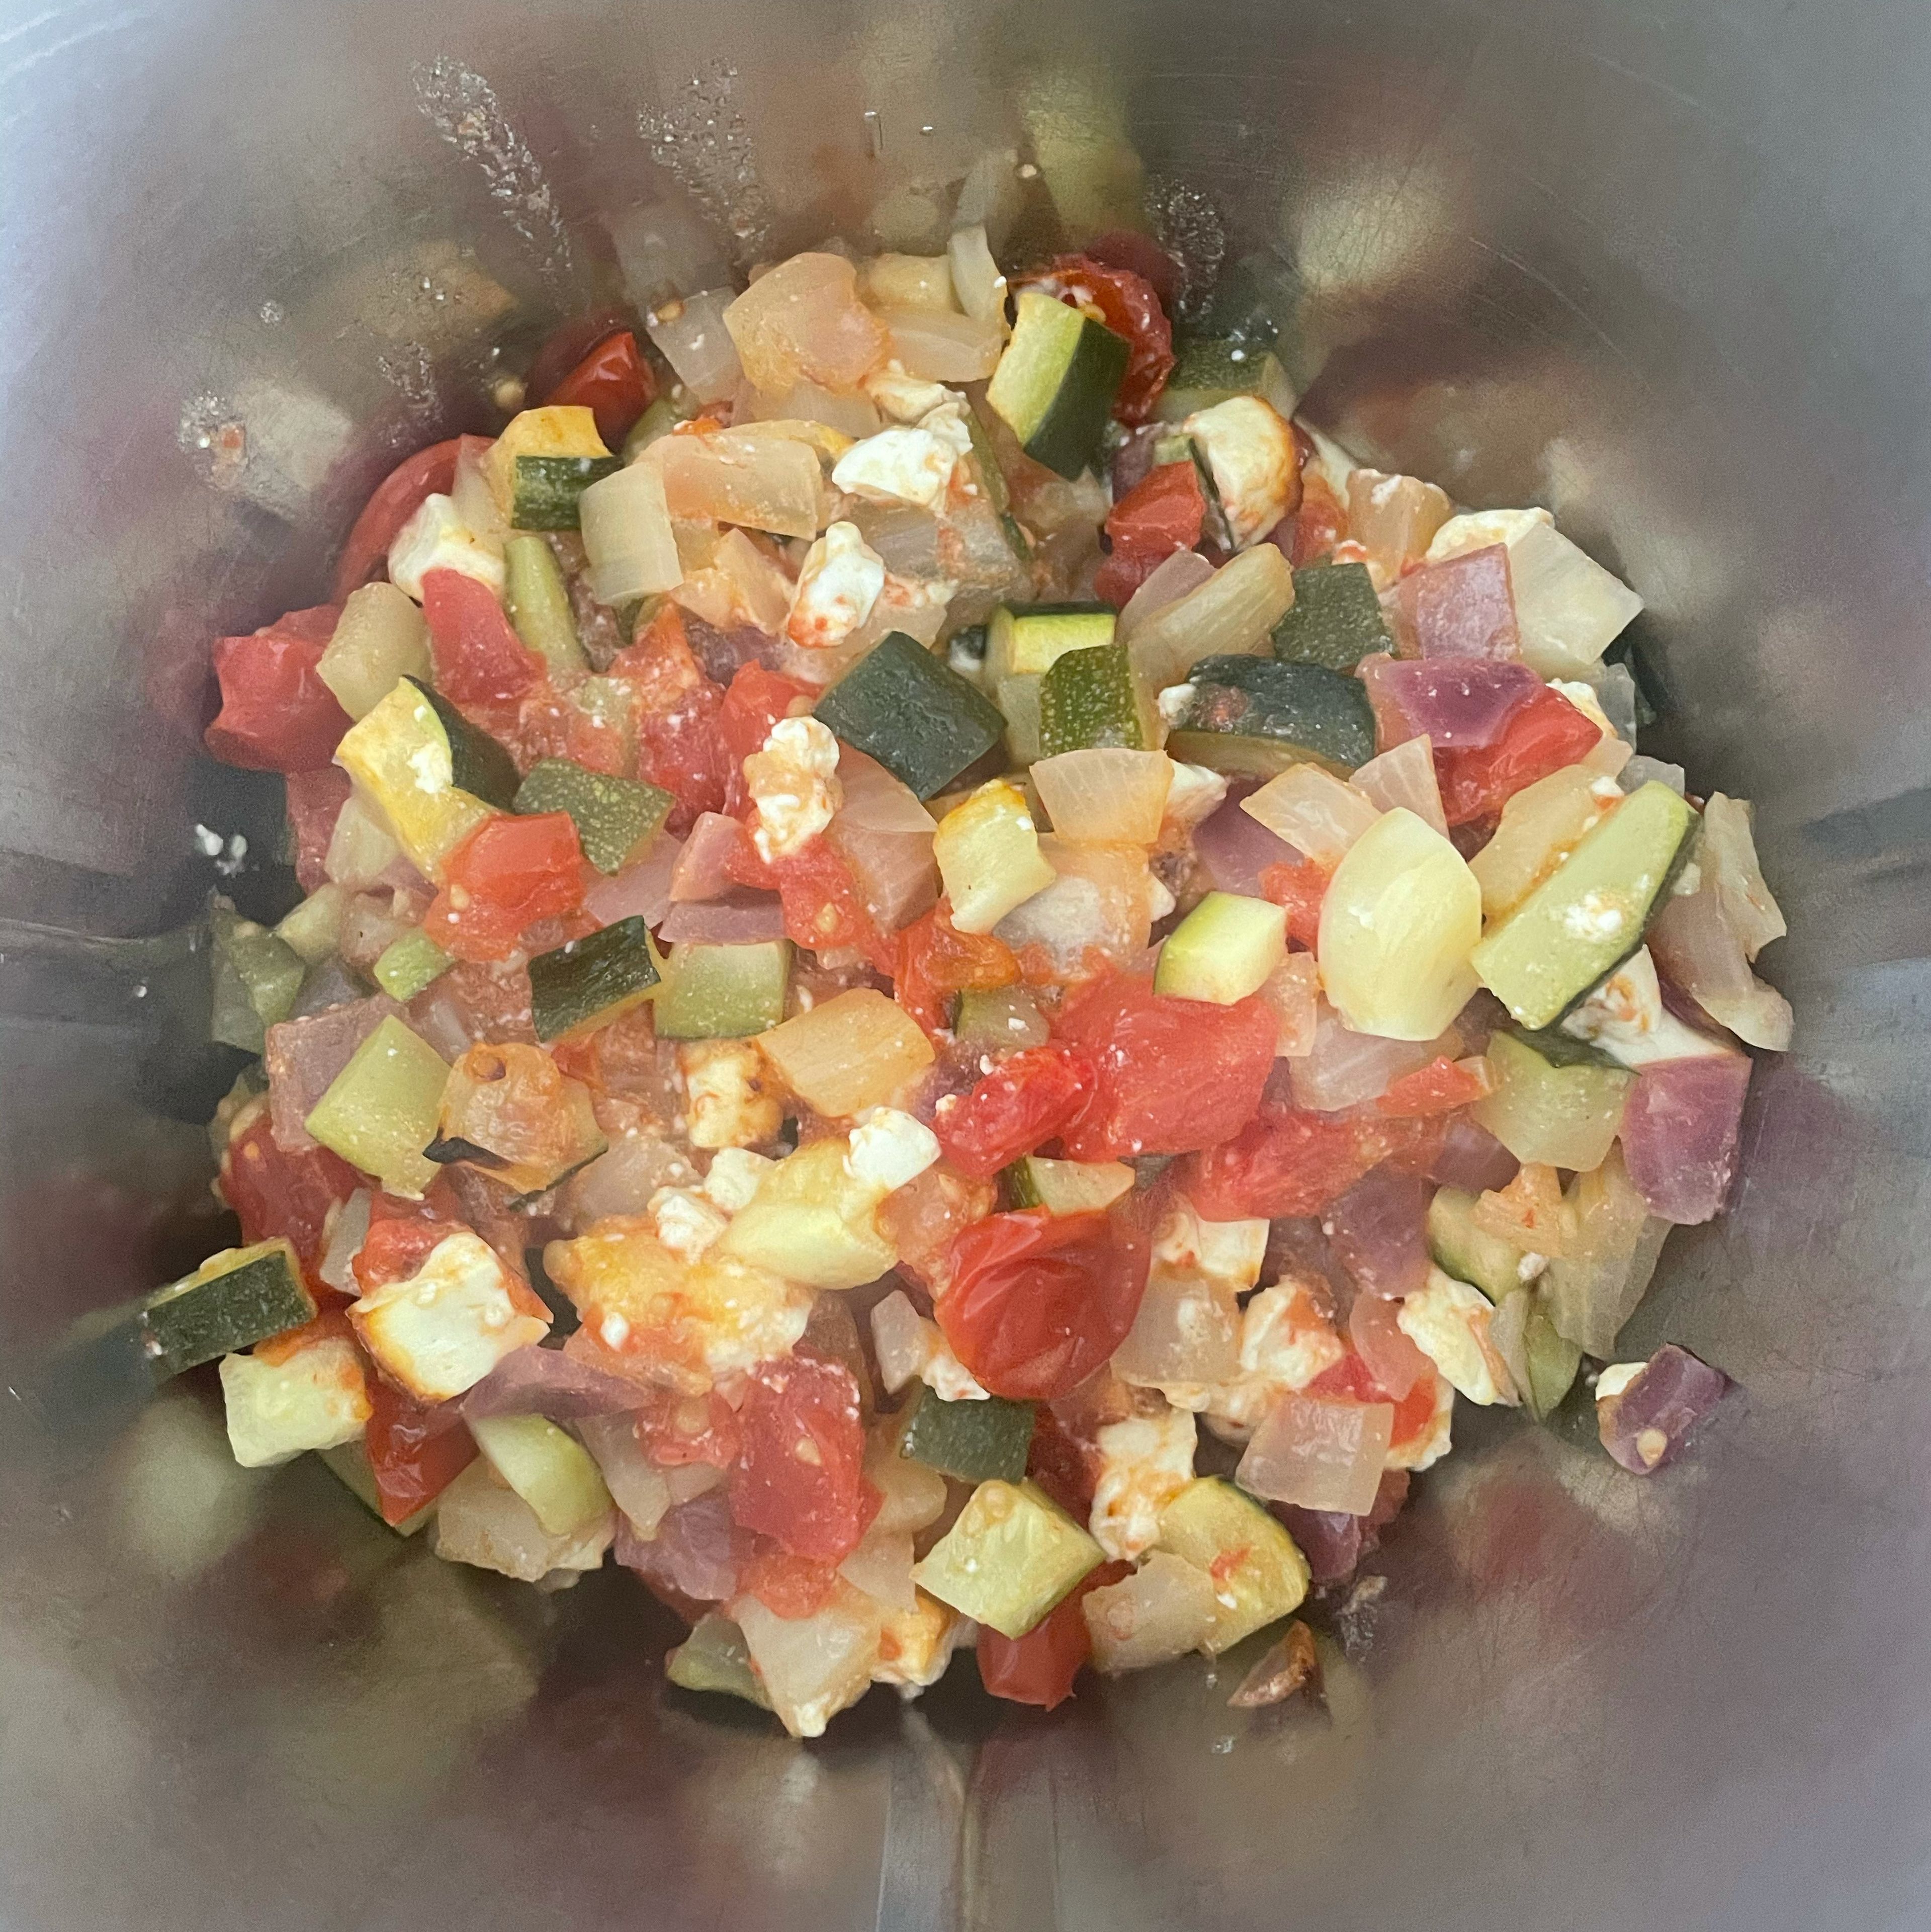 Wenn das Gemüse schon leicht angebräunt ist, alles inklusive Feta in einen Mixer geben und zerkleinern. Die Sauce nach Belieben würzen. Optional kannst du auch noch ein bisschen Sahne hinzugeben.